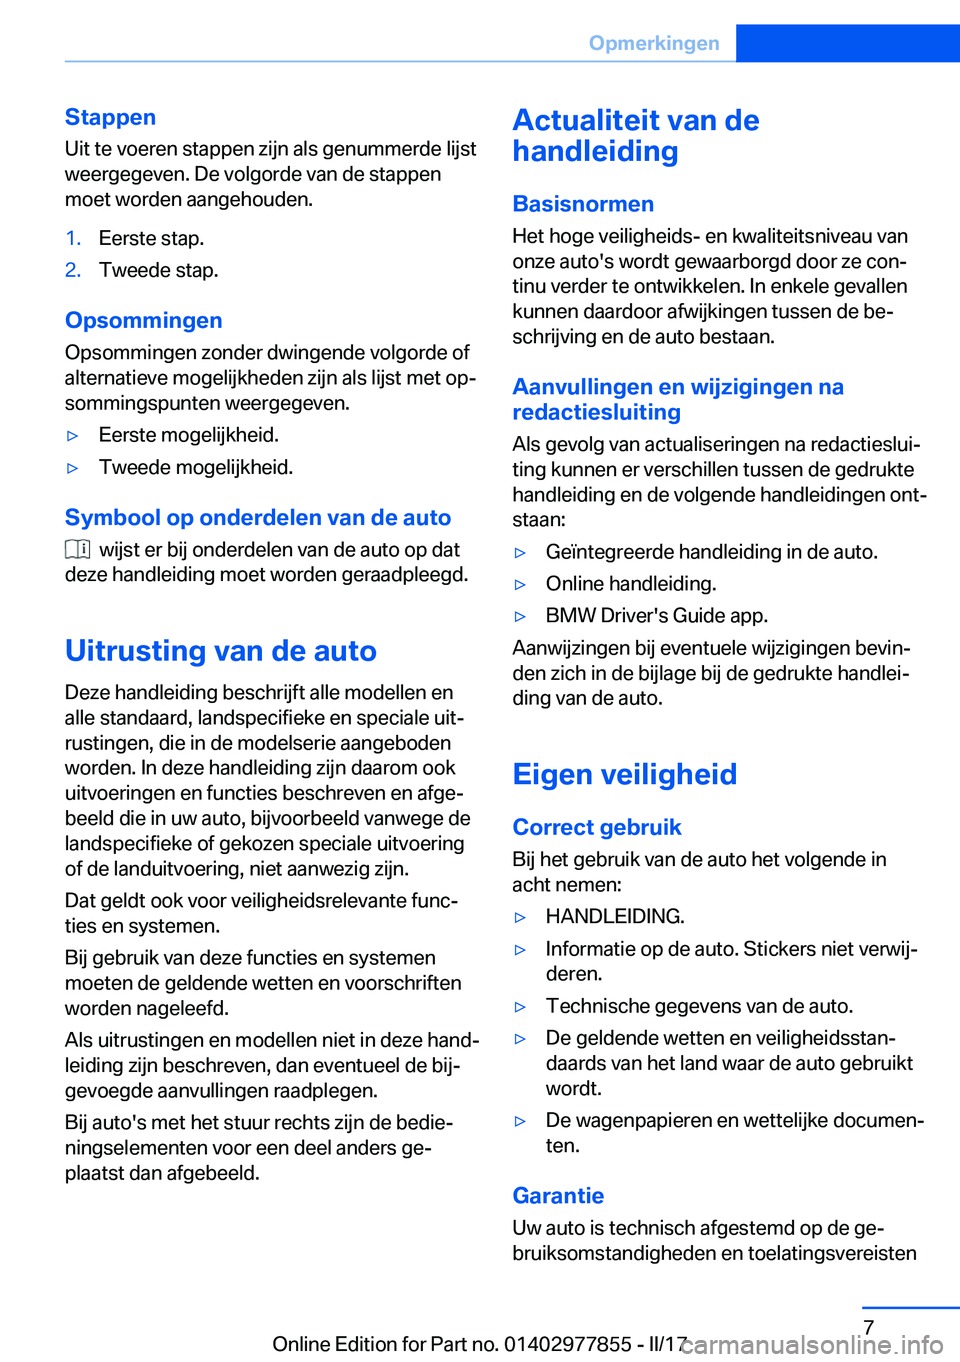 BMW X3 2017  Instructieboekjes (in Dutch) �S�t�a�p�p�e�n
�U�i�t� �t�e� �v�o�e�r�e�n� �s�t�a�p�p�e�n� �z�i�j�n� �a�l�s� �g�e�n�u�m�m�e�r�d�e� �l�i�j�s�t �w�e�e�r�g�e�g�e�v�e�n�.� �D�e� �v�o�l�g�o�r�d�e� �v�a�n� �d�e� �s�t�a�p�p�e�n�m�o�e�t� �w